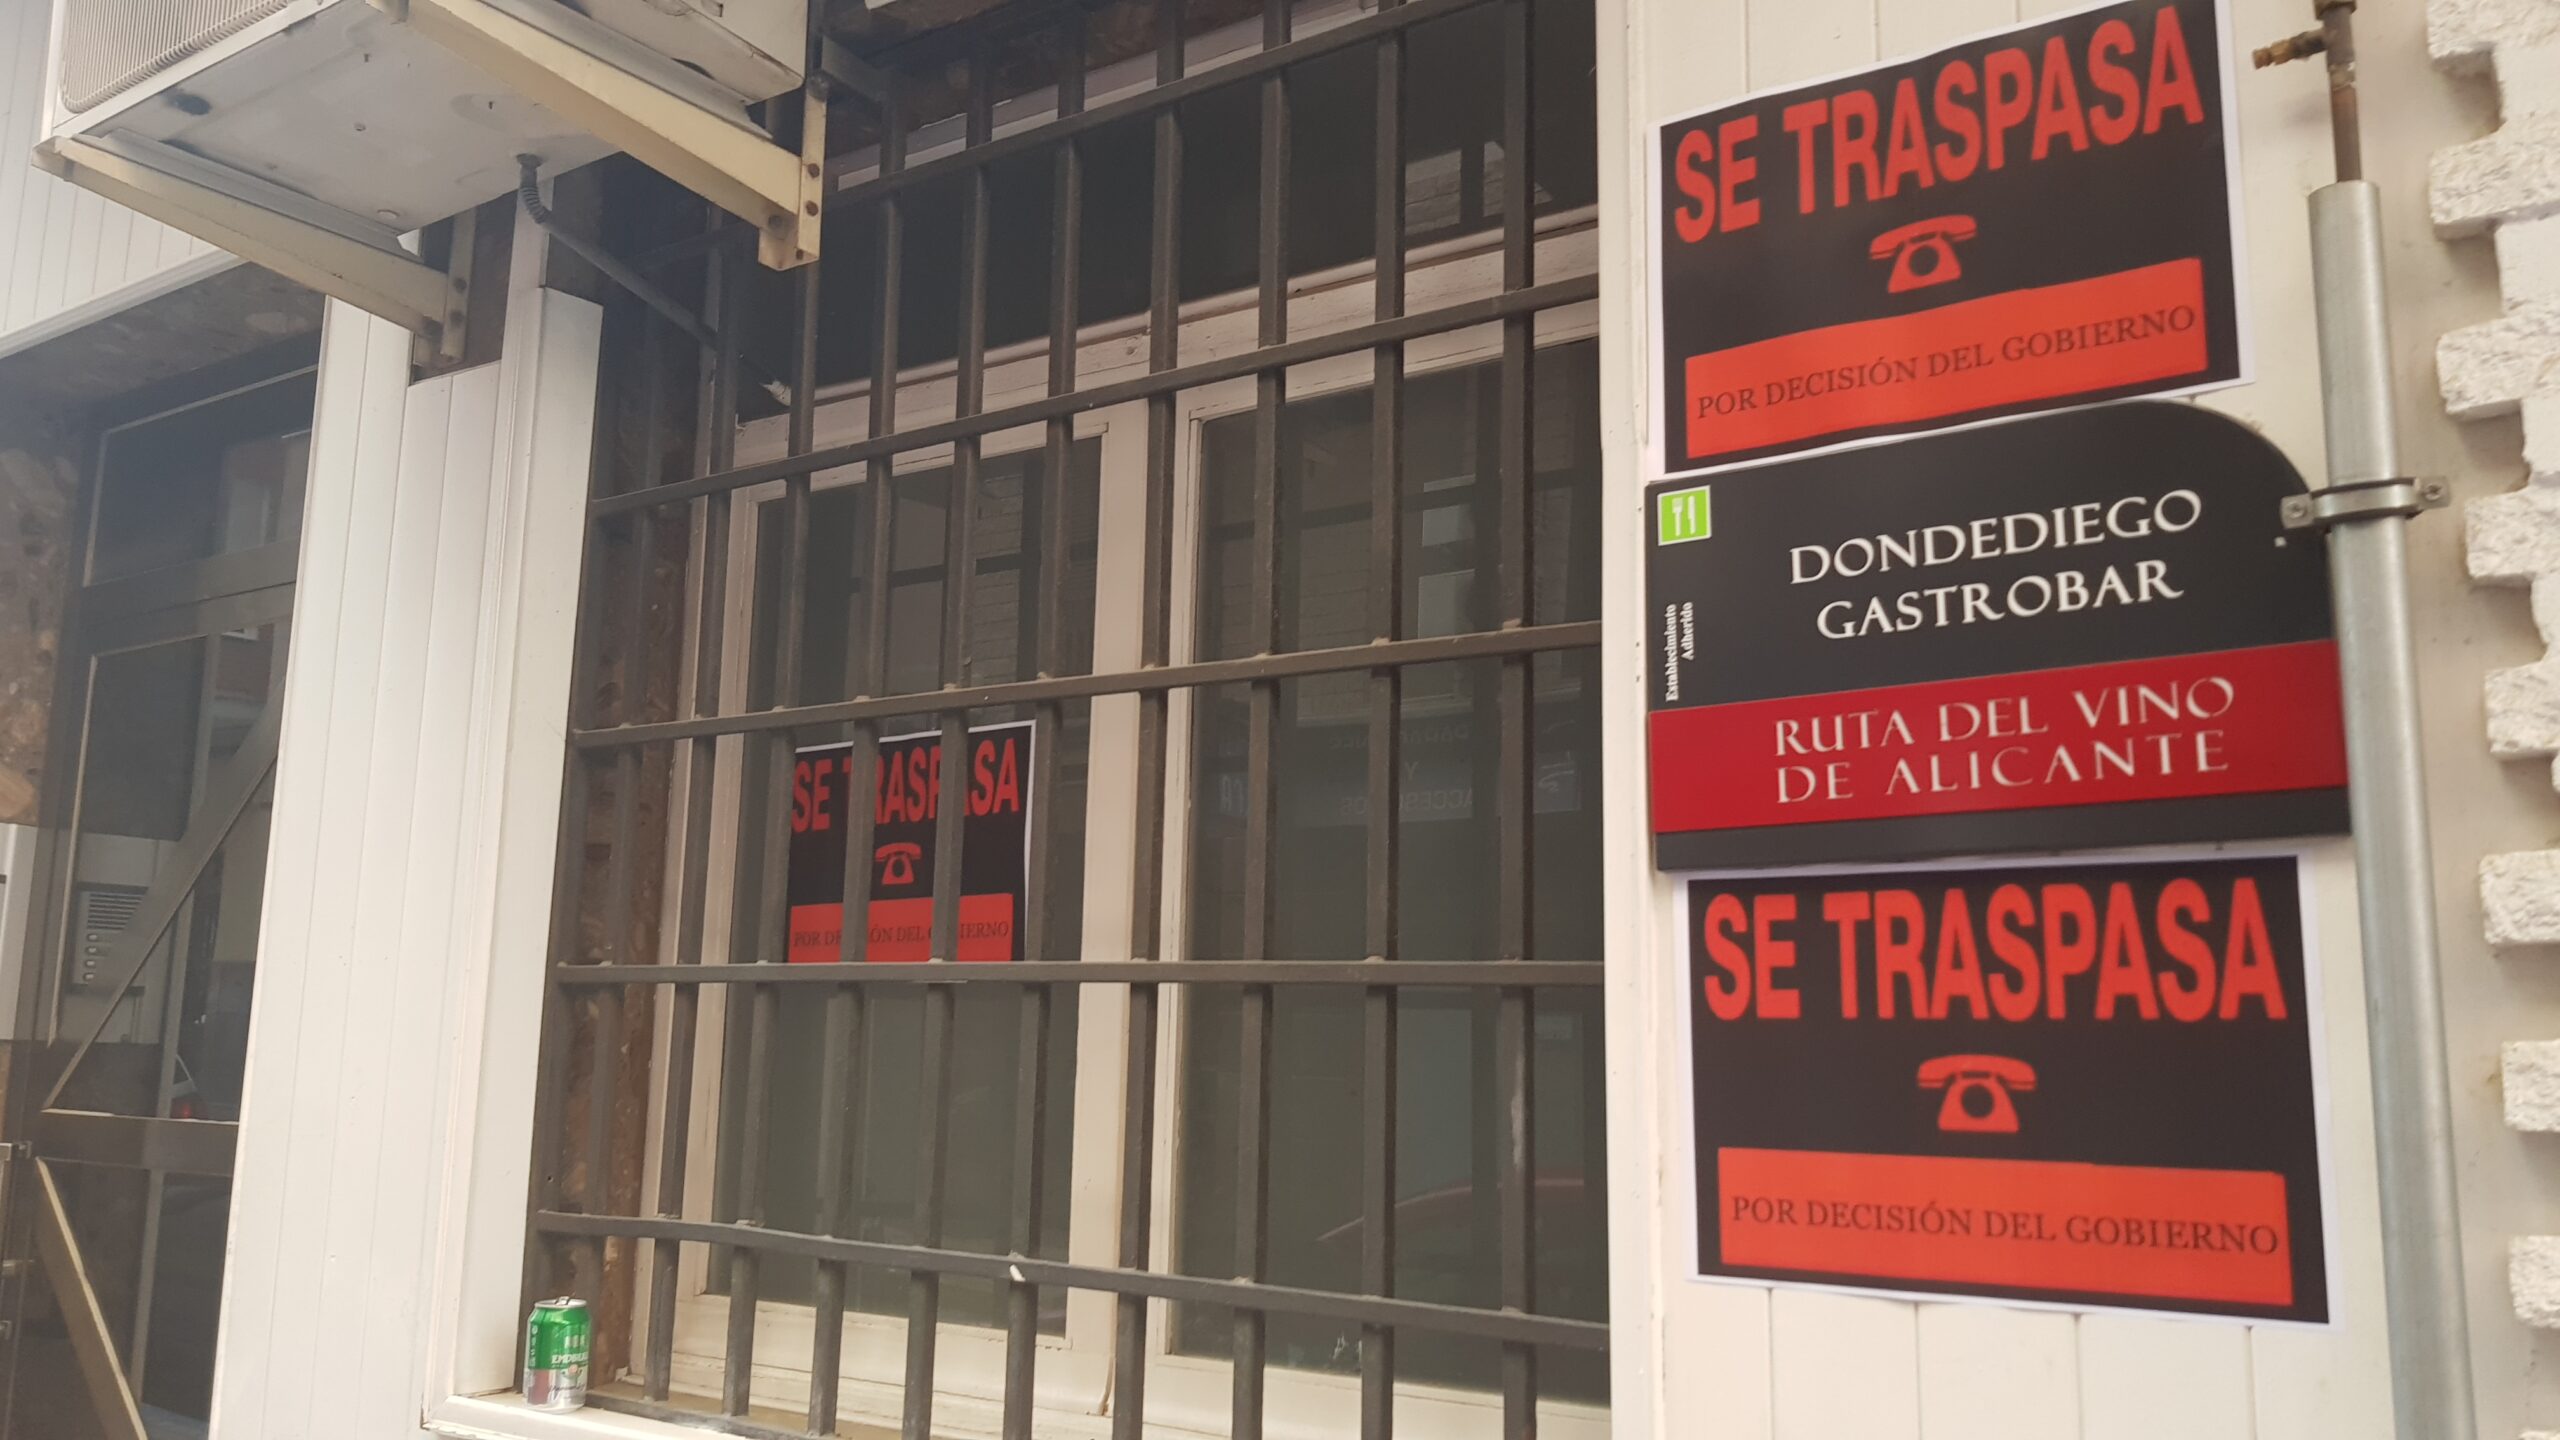 Hosteleros de Villena cuelgan el cartel de “Se traspasa” como protesta